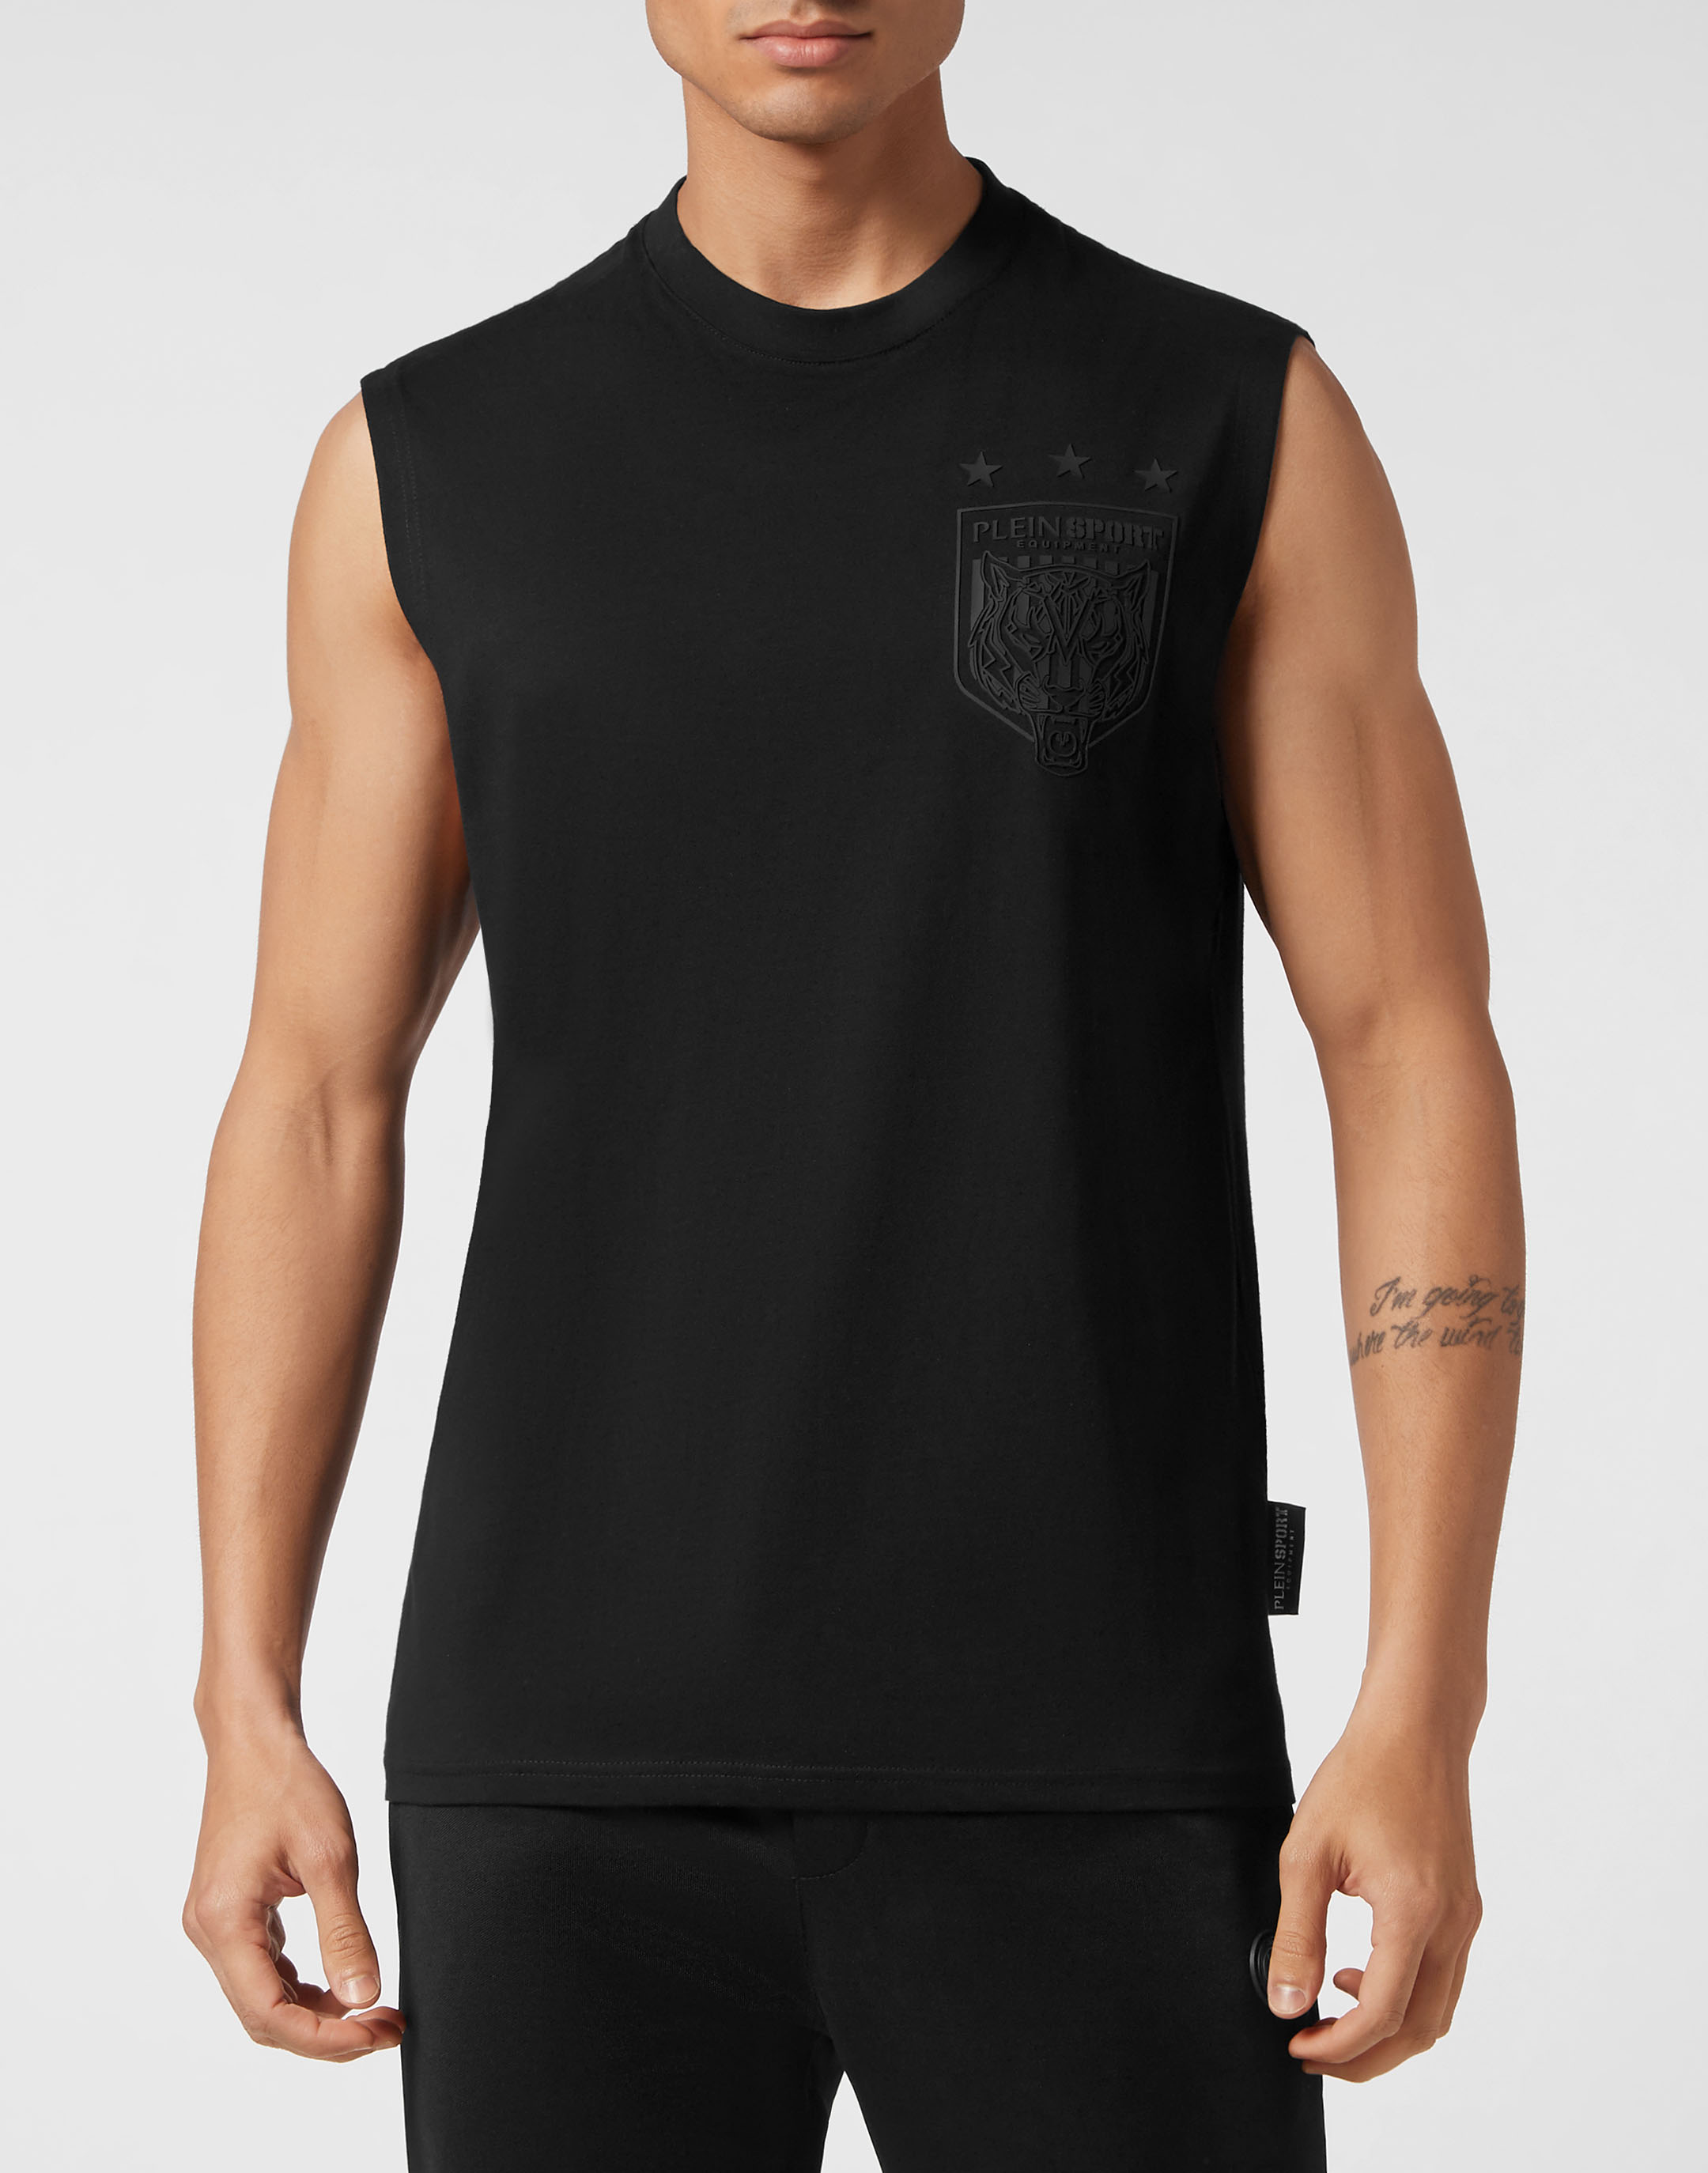 Sleeveless T-Shirt Round Crest Edition Philipp Plein Sport